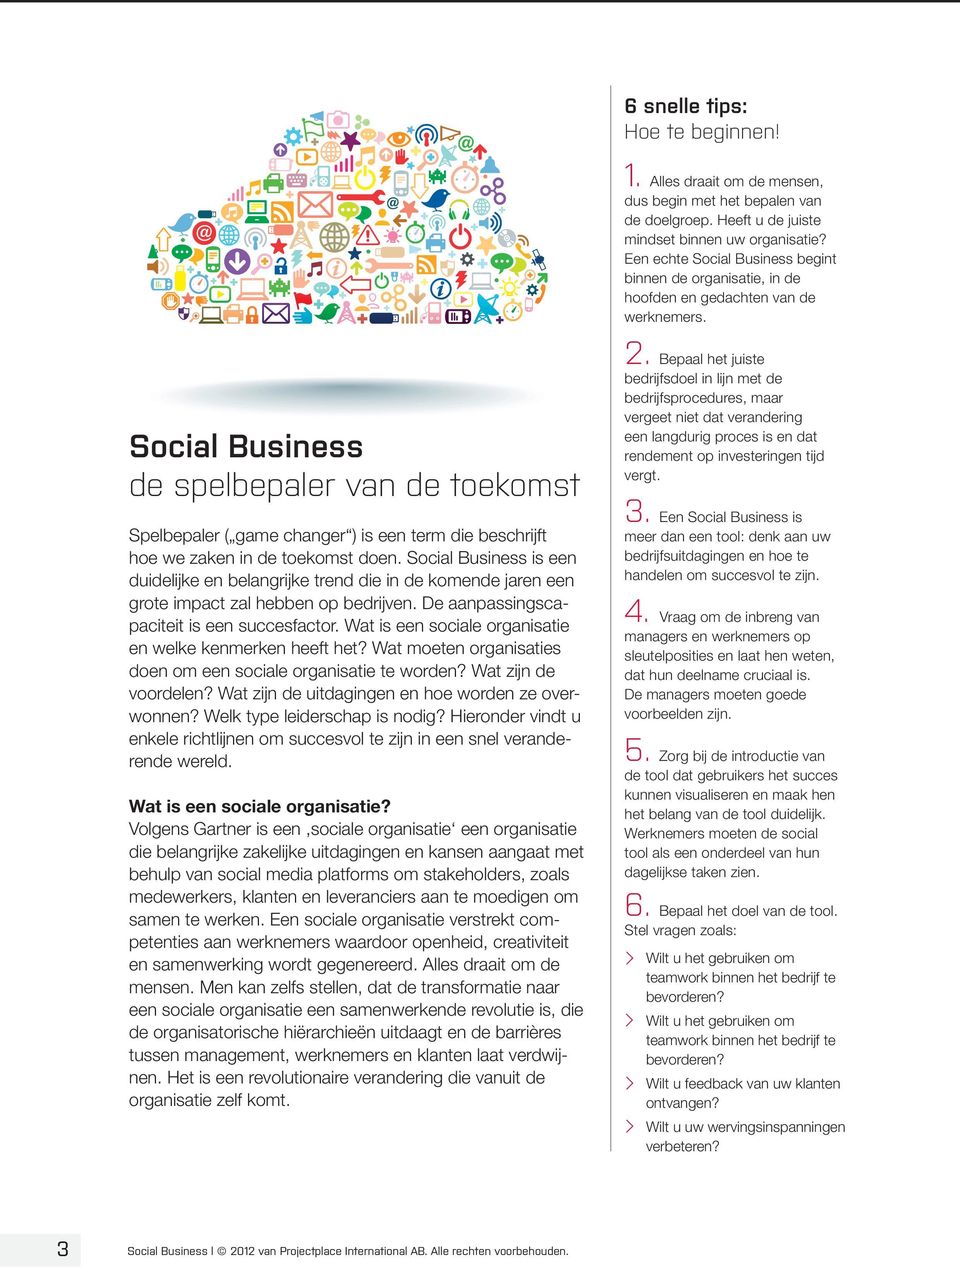 Wat is een sociale organisatie en welke kenmerken heeft het? Wat moeten organisaties doen om een sociale organisatie te worden? Wat zijn de voordelen?